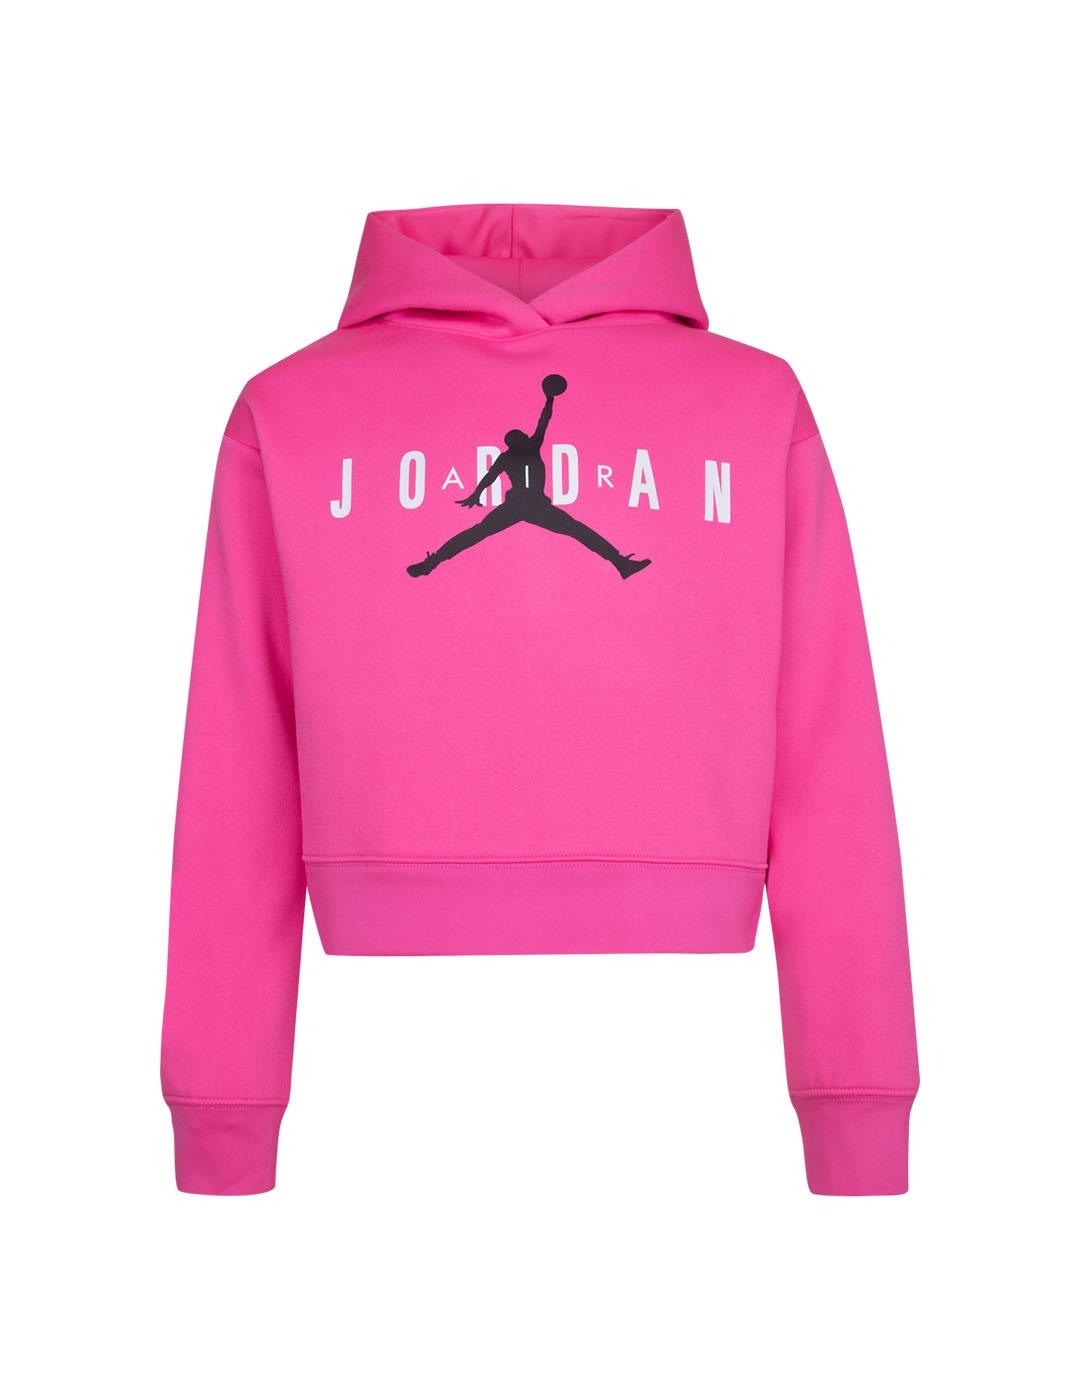 Sudadera Niña Nike Jumpman Jordan Rosa